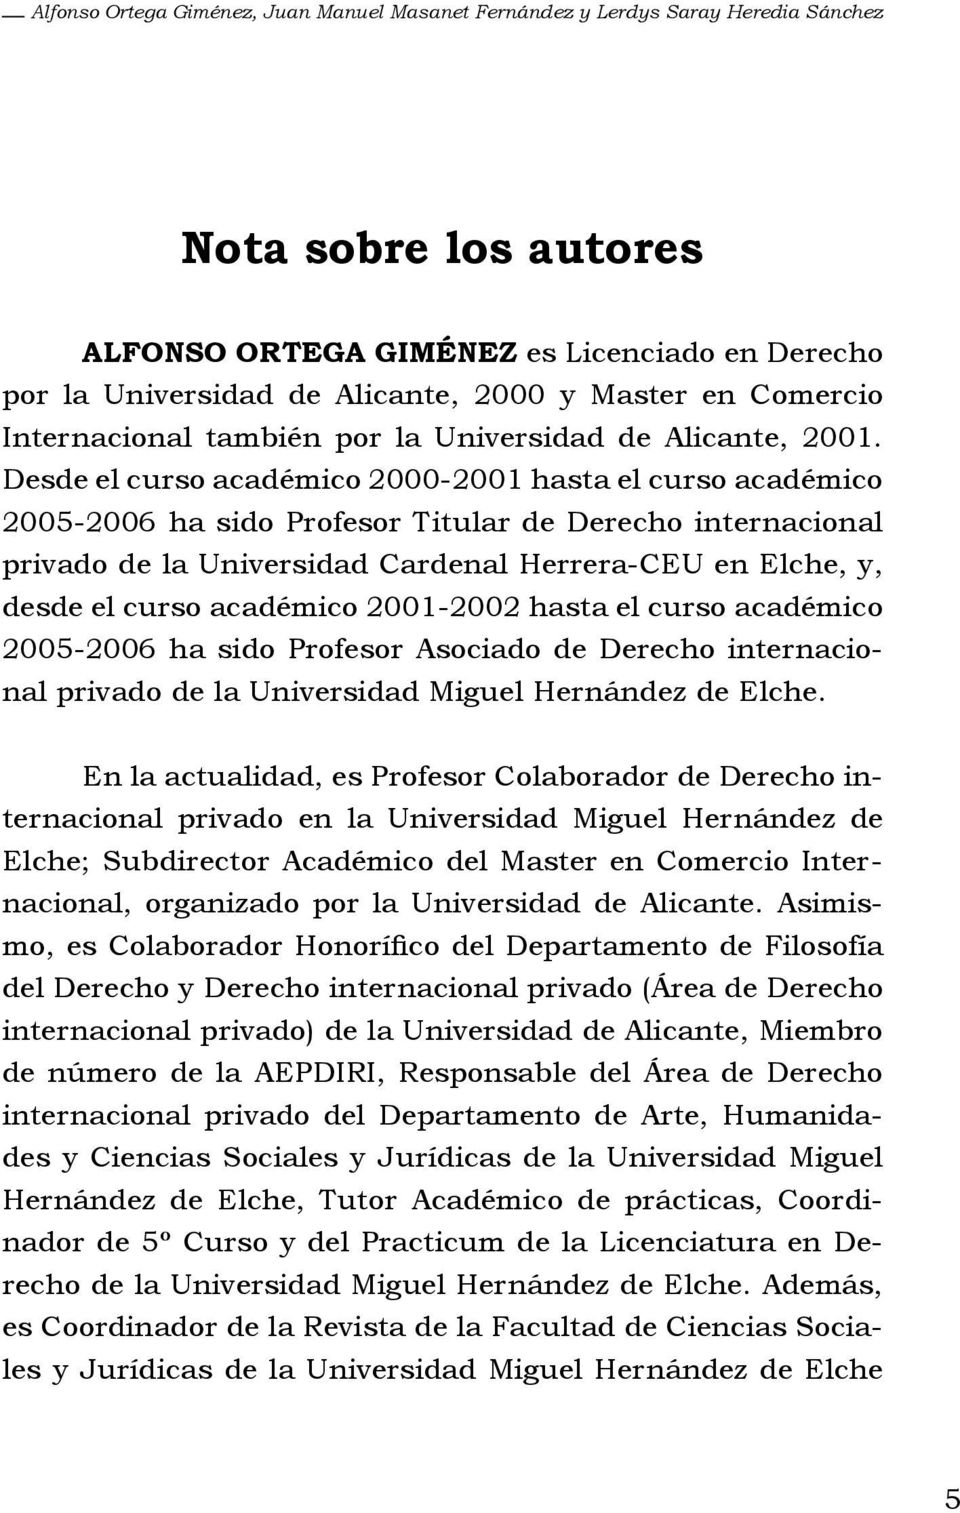 Desde el curso académico 2000-2001 hasta el curso académico 2005-2006 ha sido Profesor Titular de Derecho internacional privado de la Universidad Cardenal Herrera-CEU en Elche, y, desde el curso